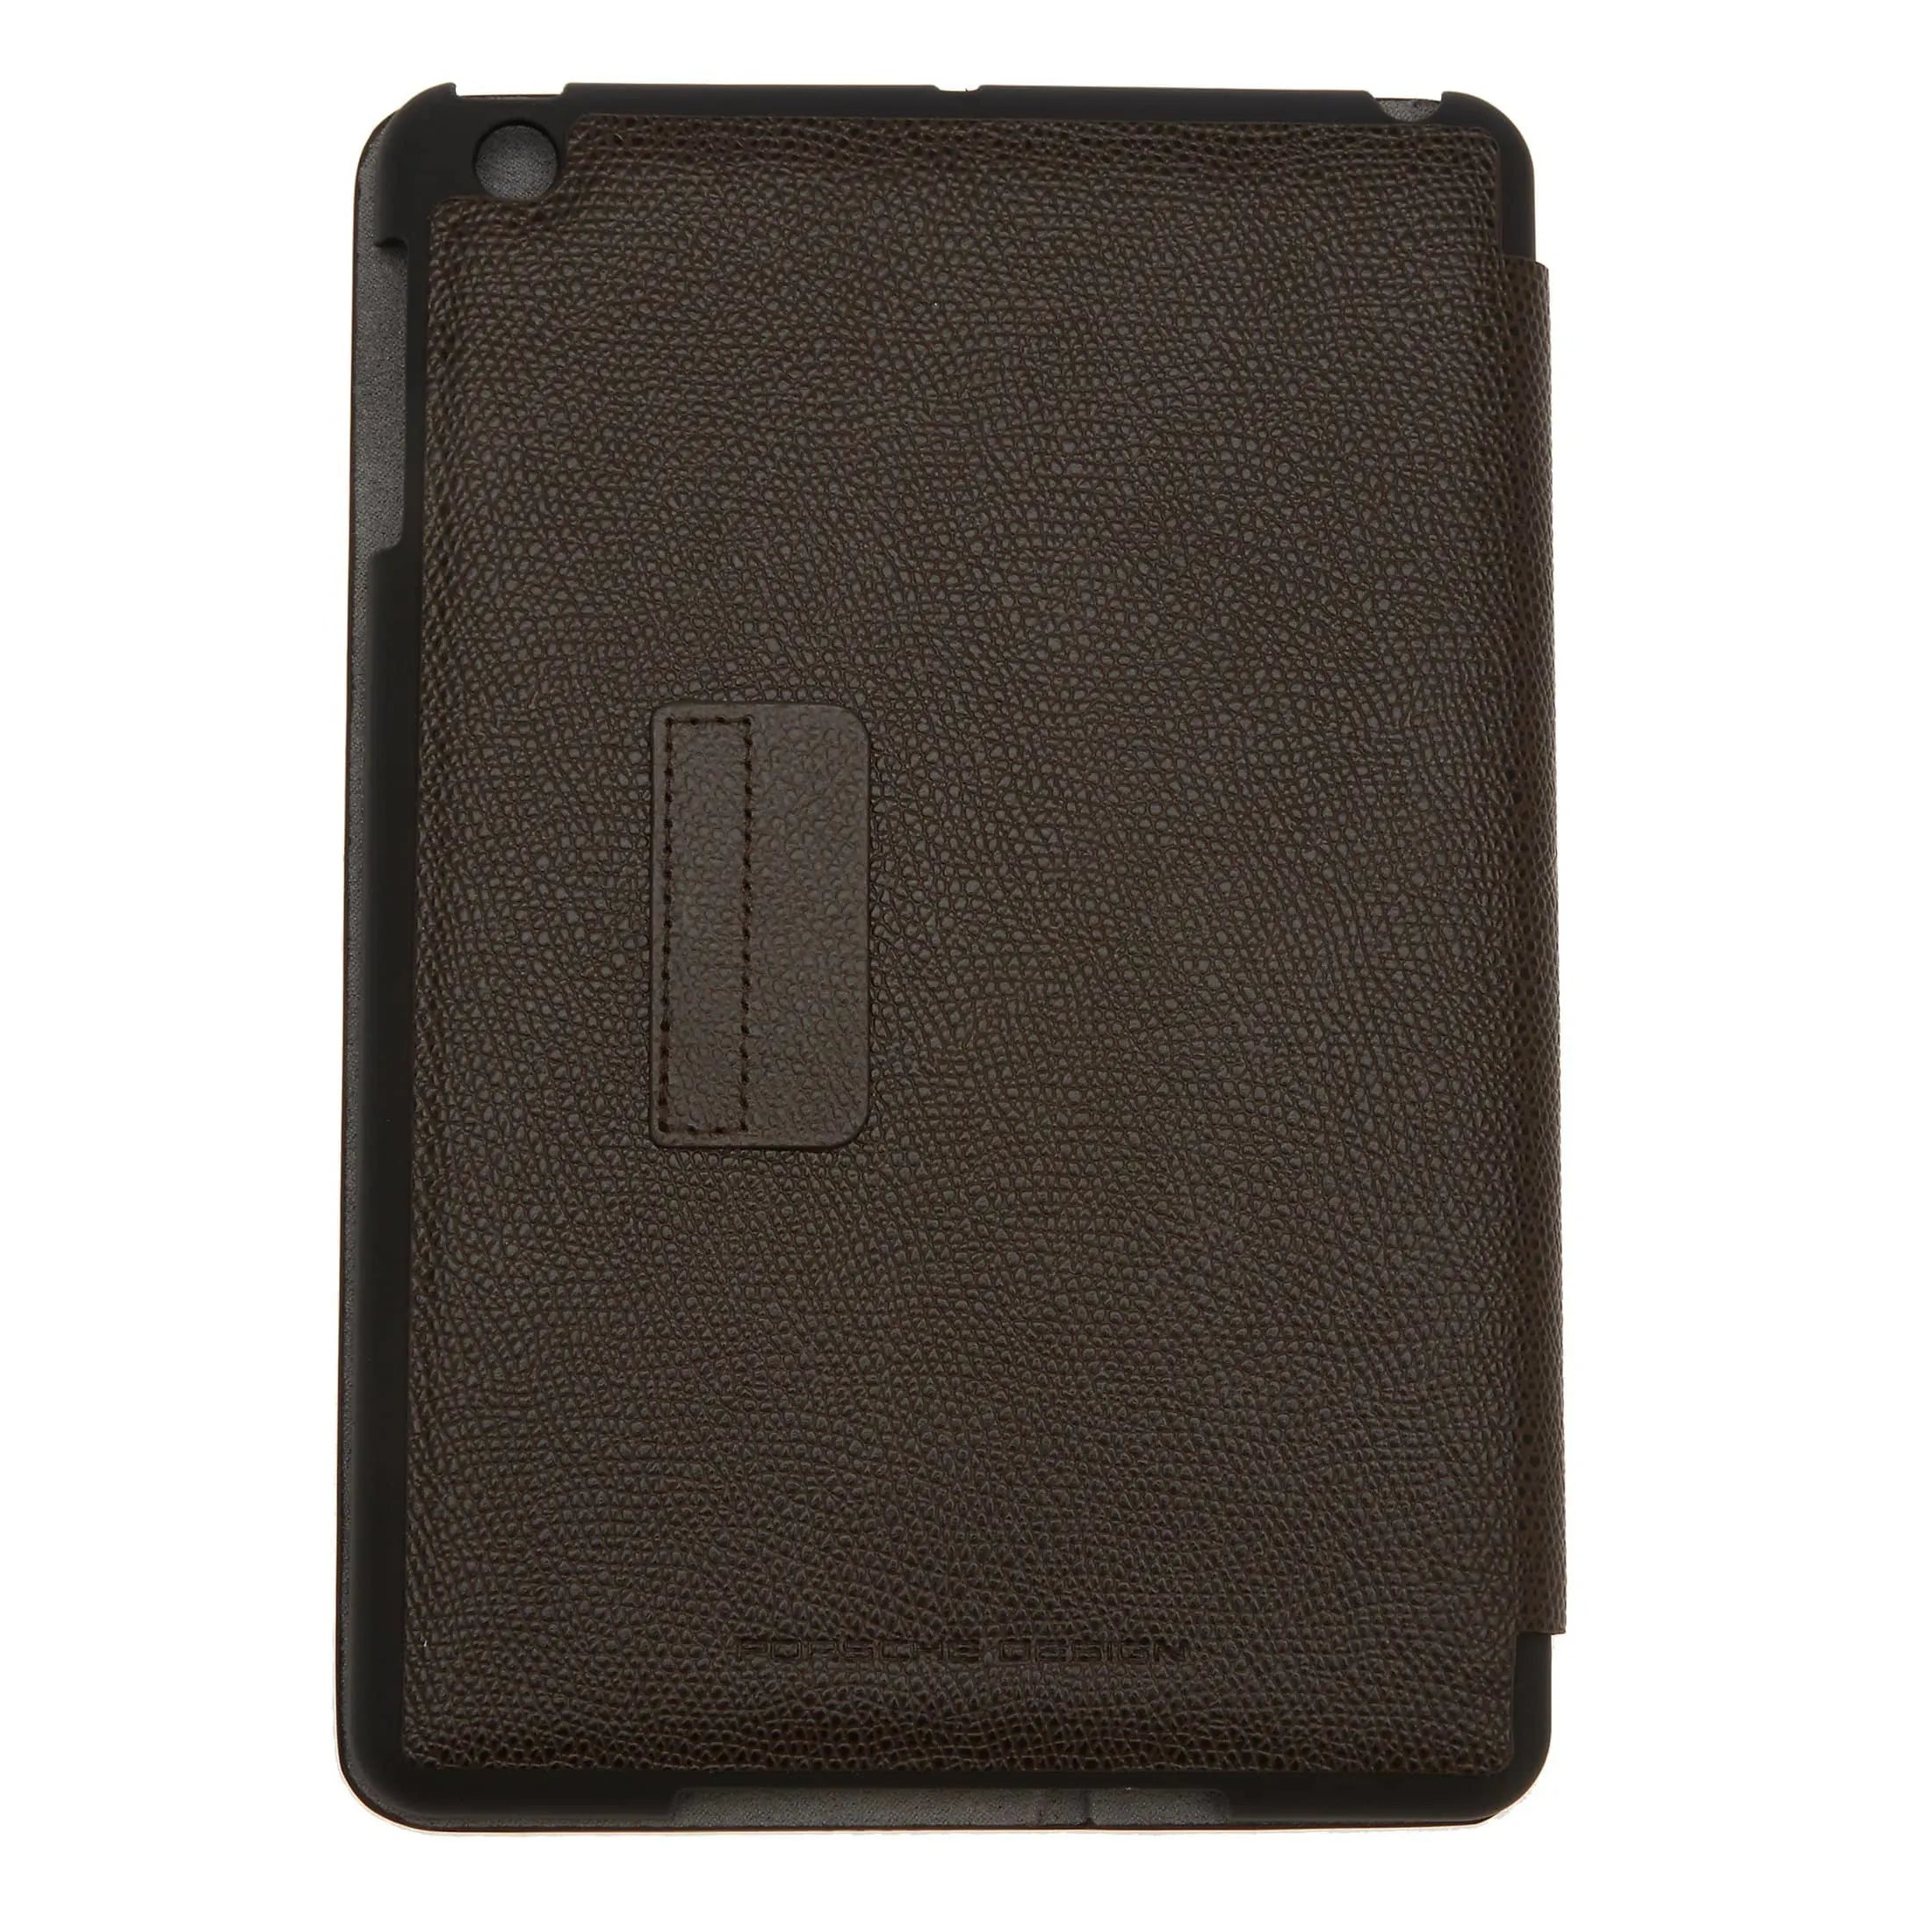 Porsche Design French Classic 3.0 Portfolio iPad mini Case 20 cm - dark brown